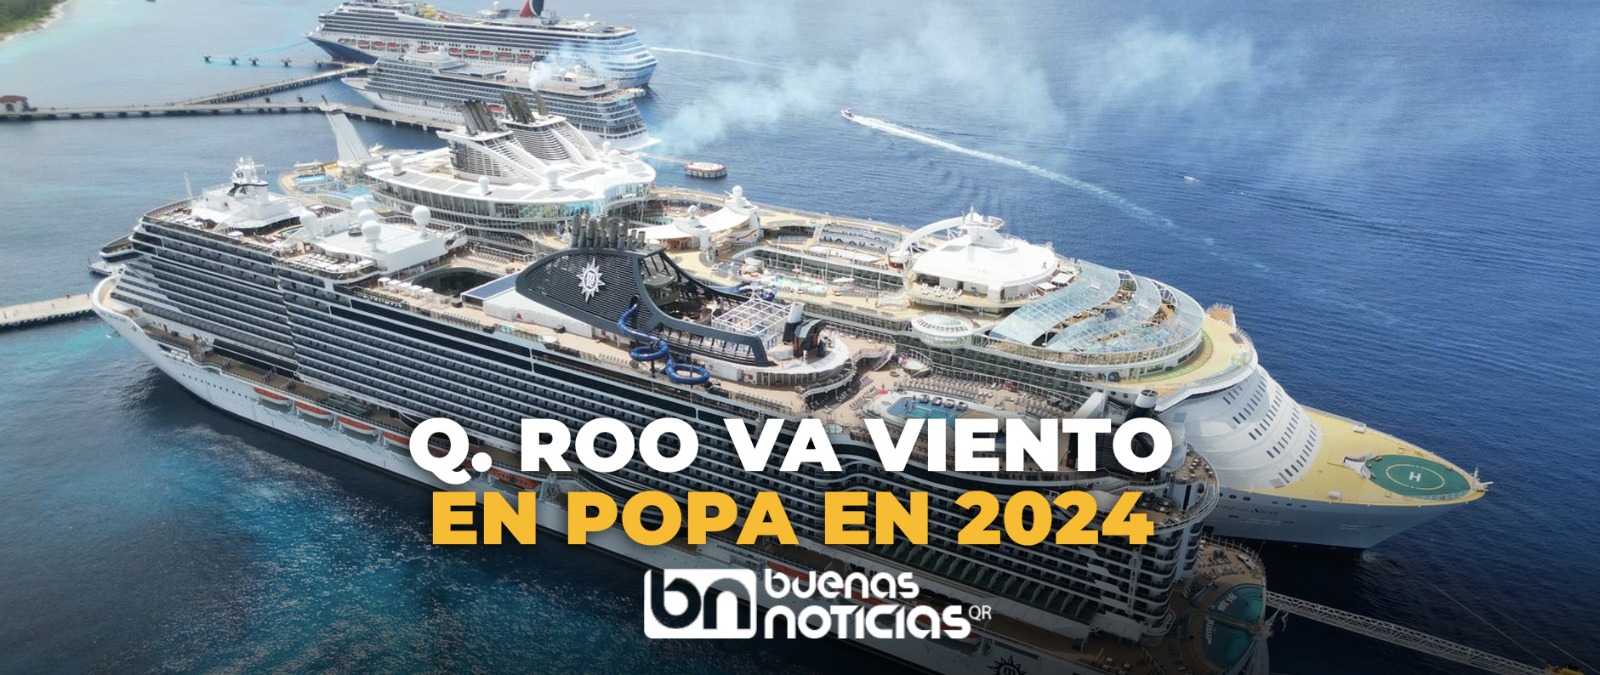 Tiene Quintana Roo el mayor arribo de cruceros en era post Covid